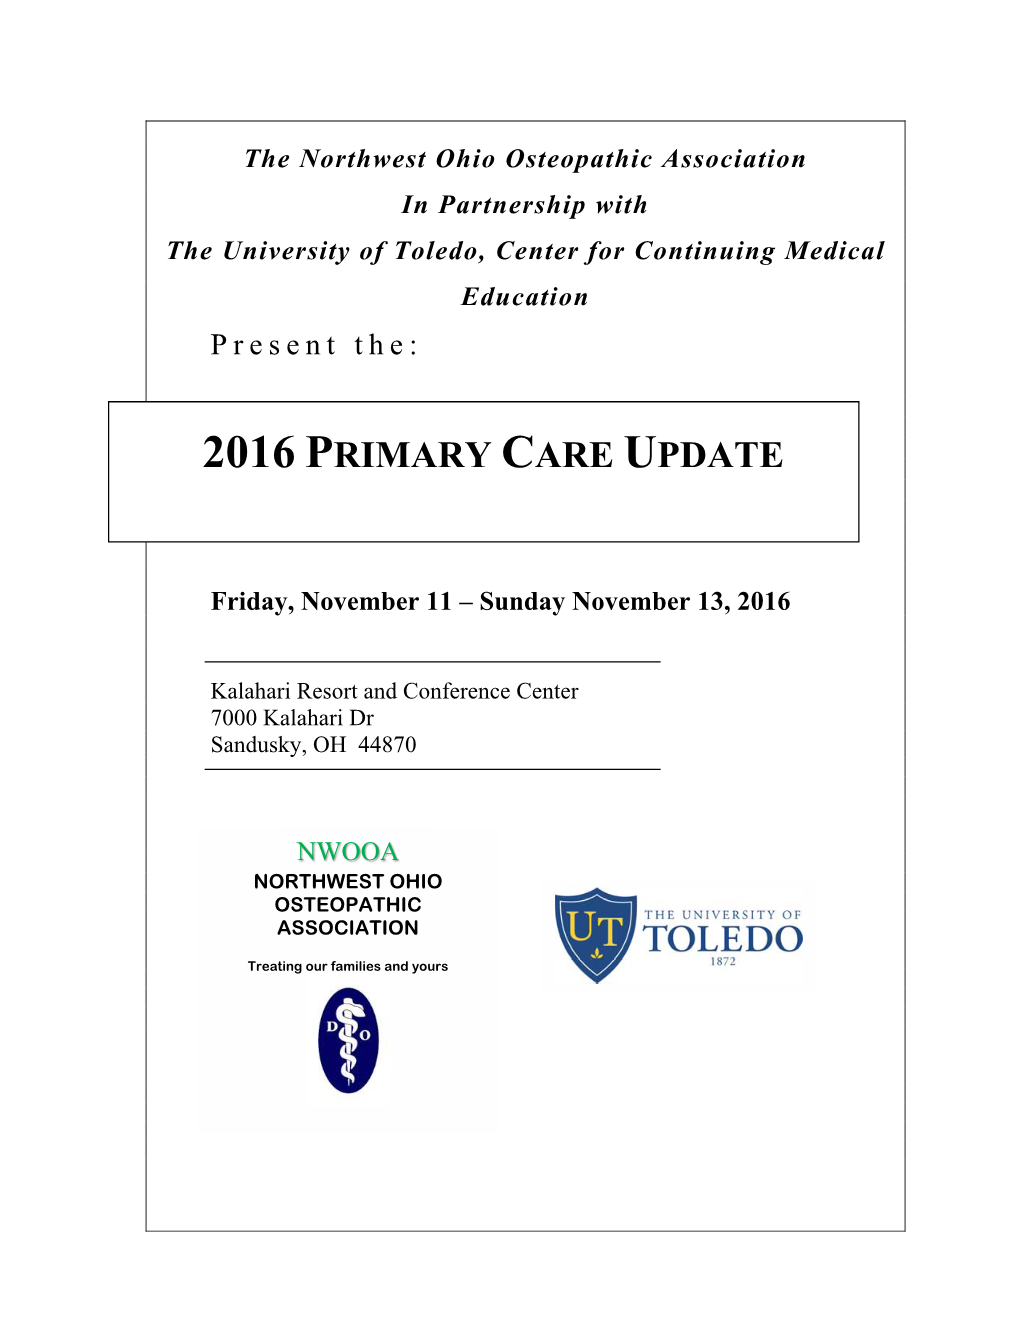 2016 Primary Care Update